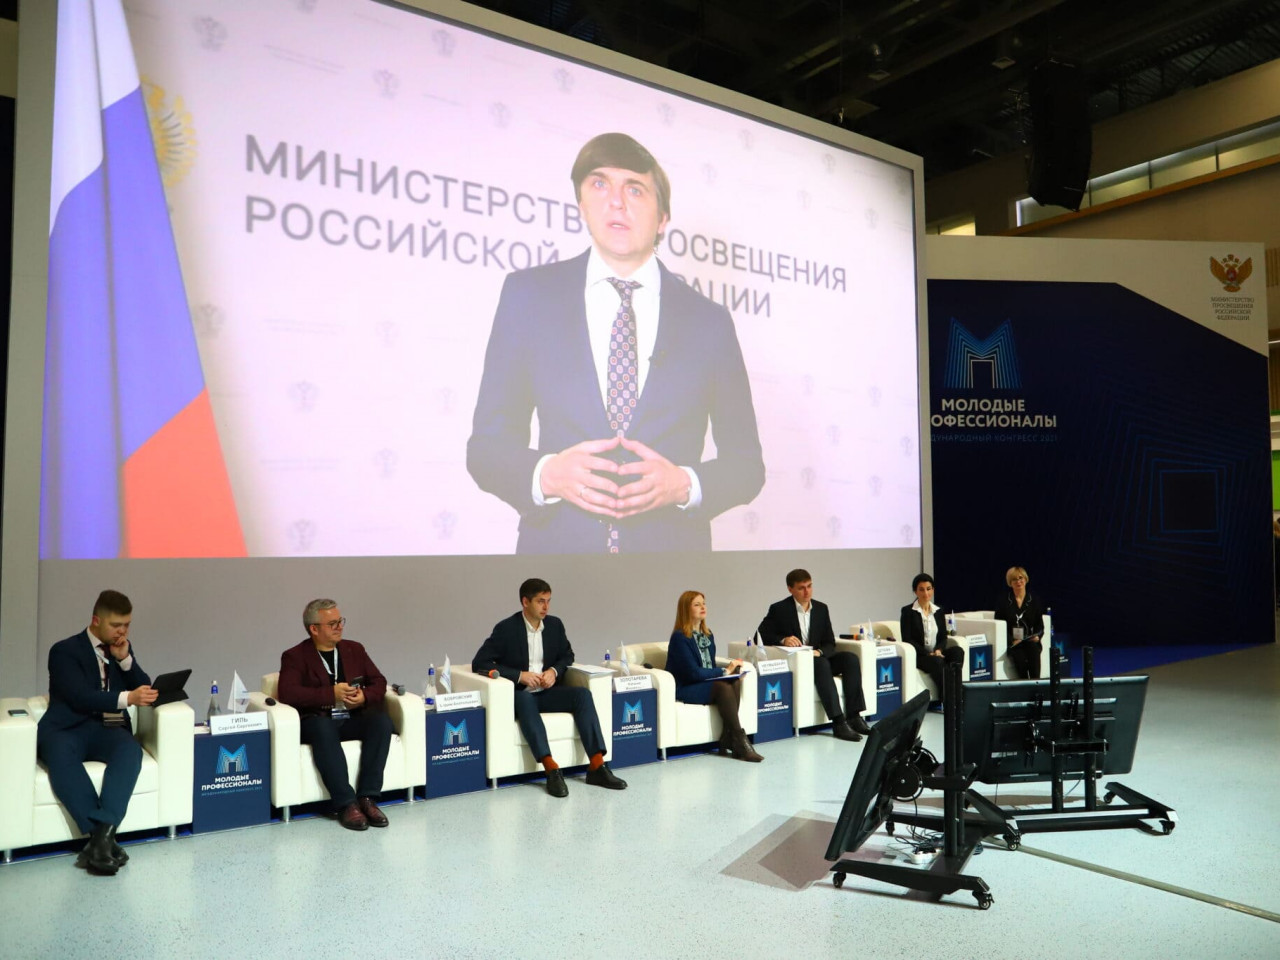 В Москве состоялось торжественное открытие конгресса «Молодые профессионалы»